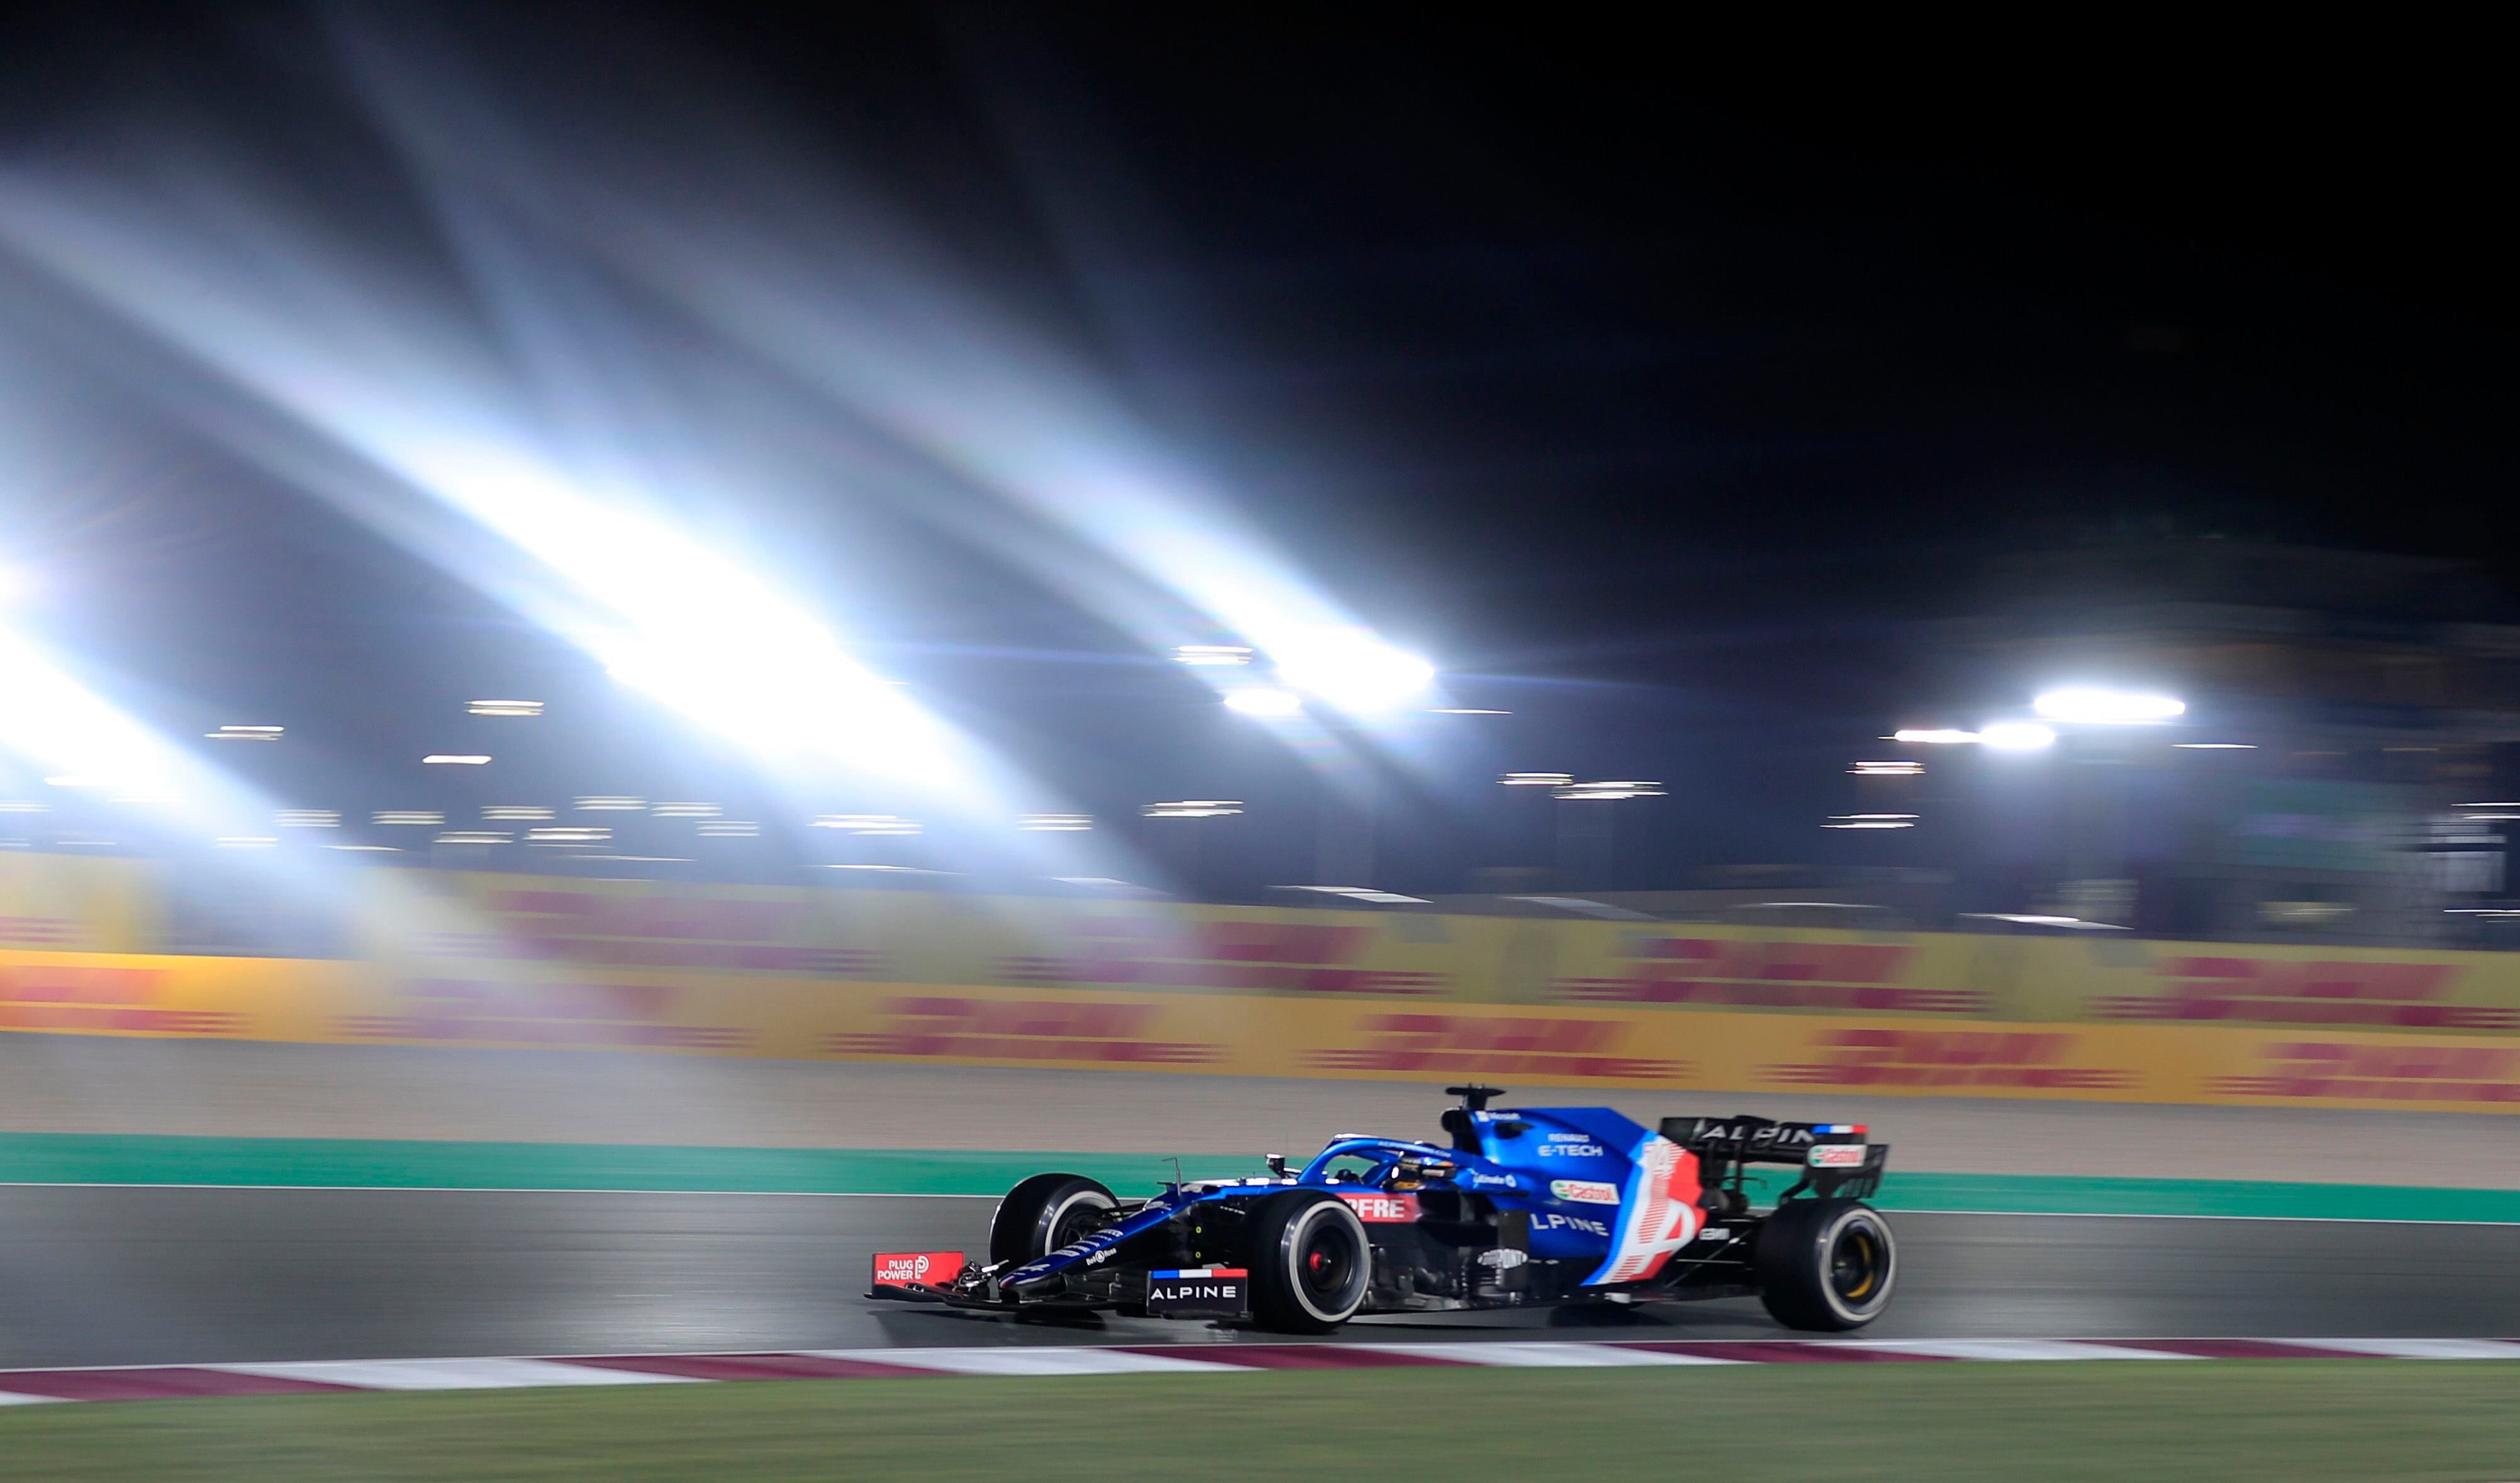 Fernando Alonso en acción sobre el Alpine de Fórmula 1, con el que fue tercero en el GP de Qatar, detras de Lewis Hamilton y Max Verstappen